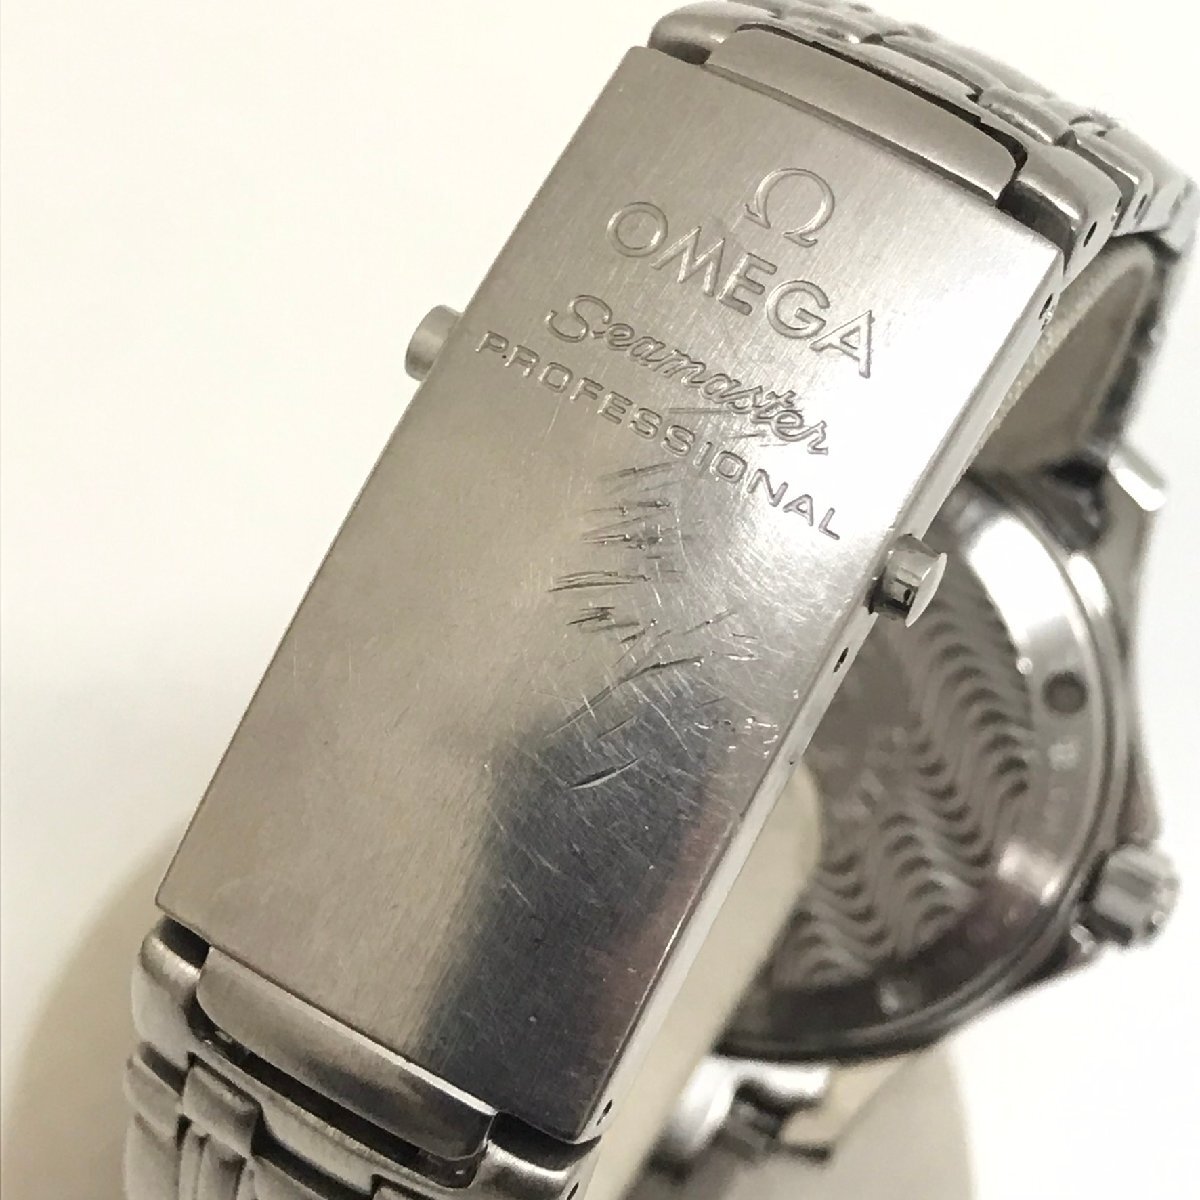 中古品 オメガ omega シーマスター プロフェッショナル 2562.80 ネイビー文字盤 デイト付き 300m 記念品刻印付 質屋出品_バックルに傷があります